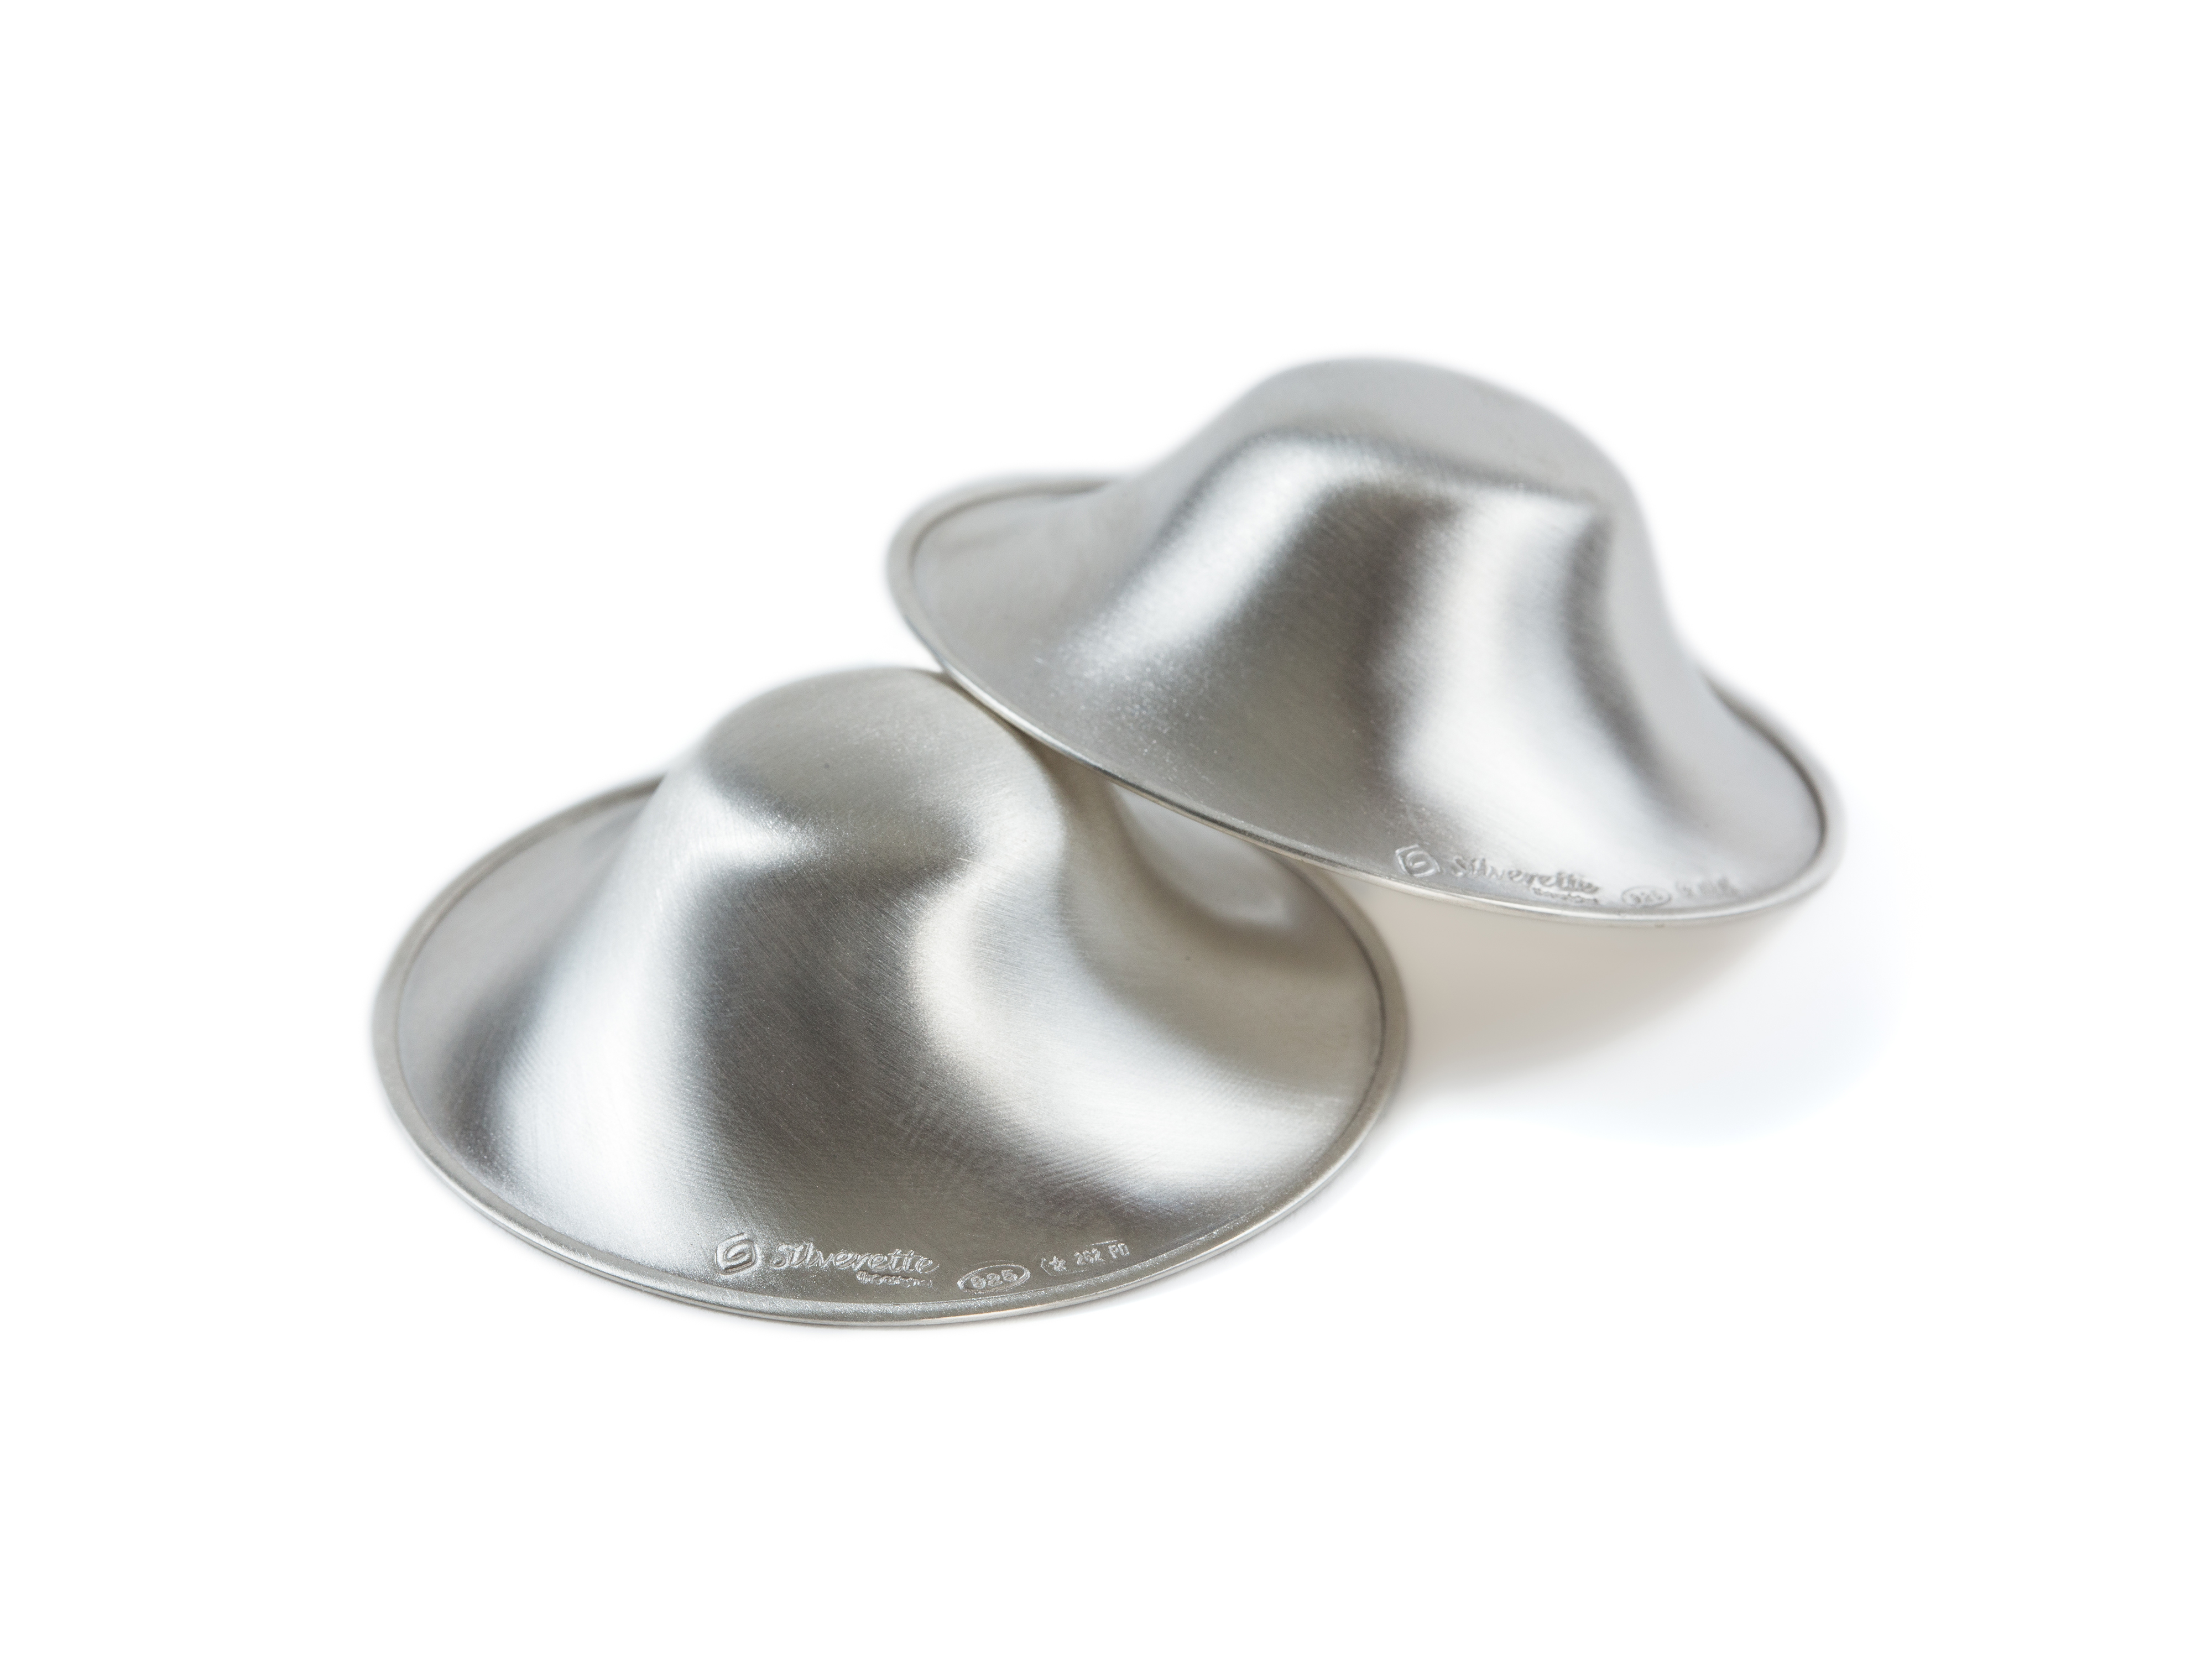 Brystknoppbeskyttere i sølv, X-Large, 2 stk.